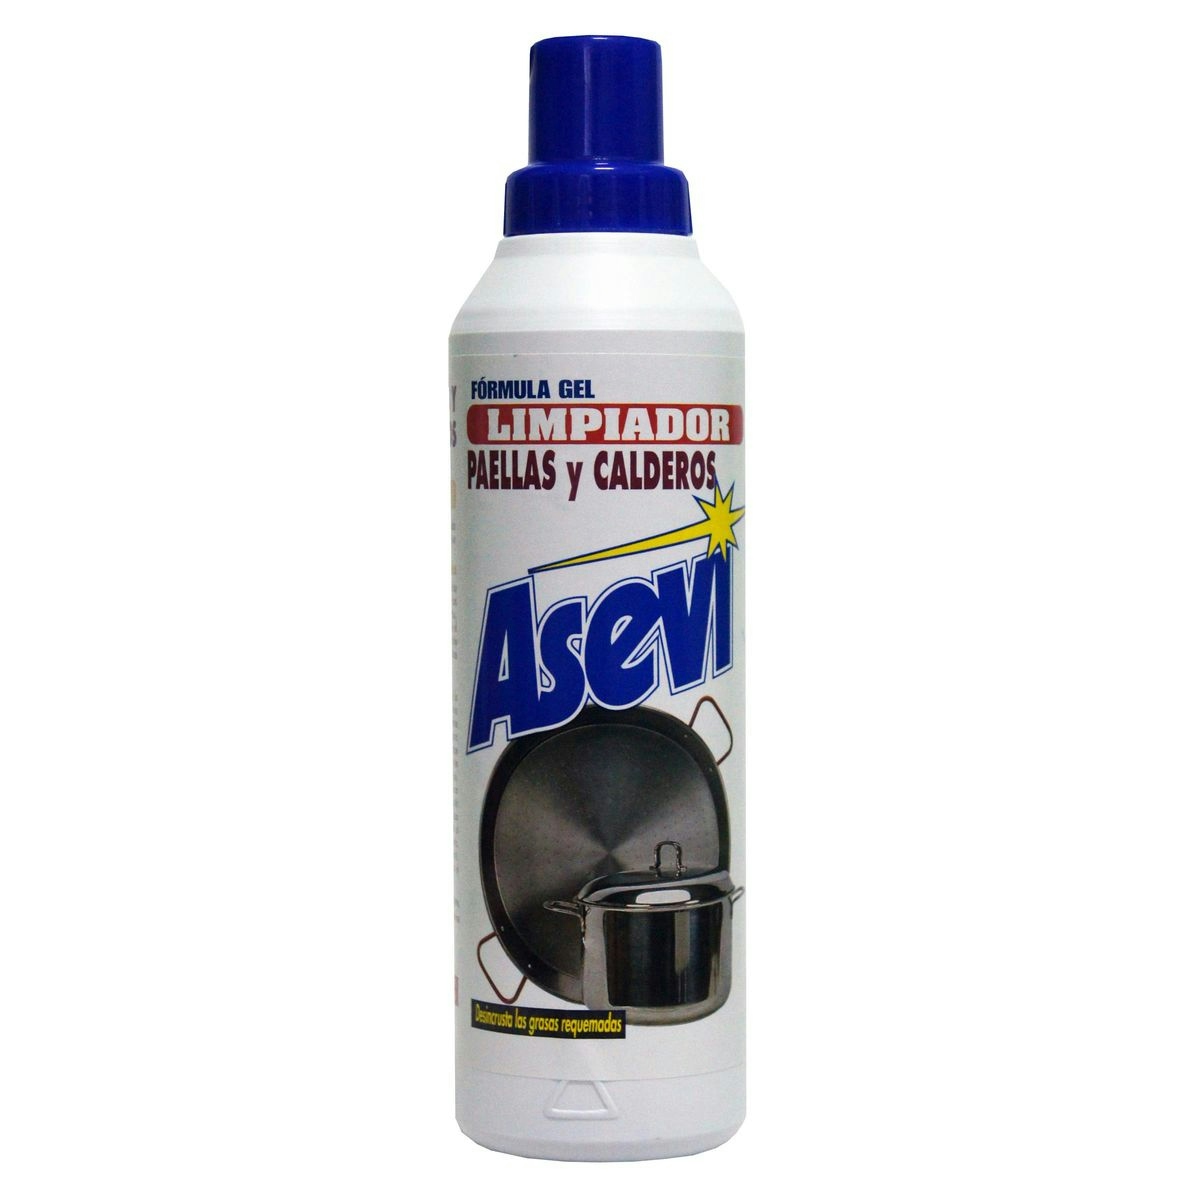 Limpiador paellas y calderos ASEVI botella 500 ml